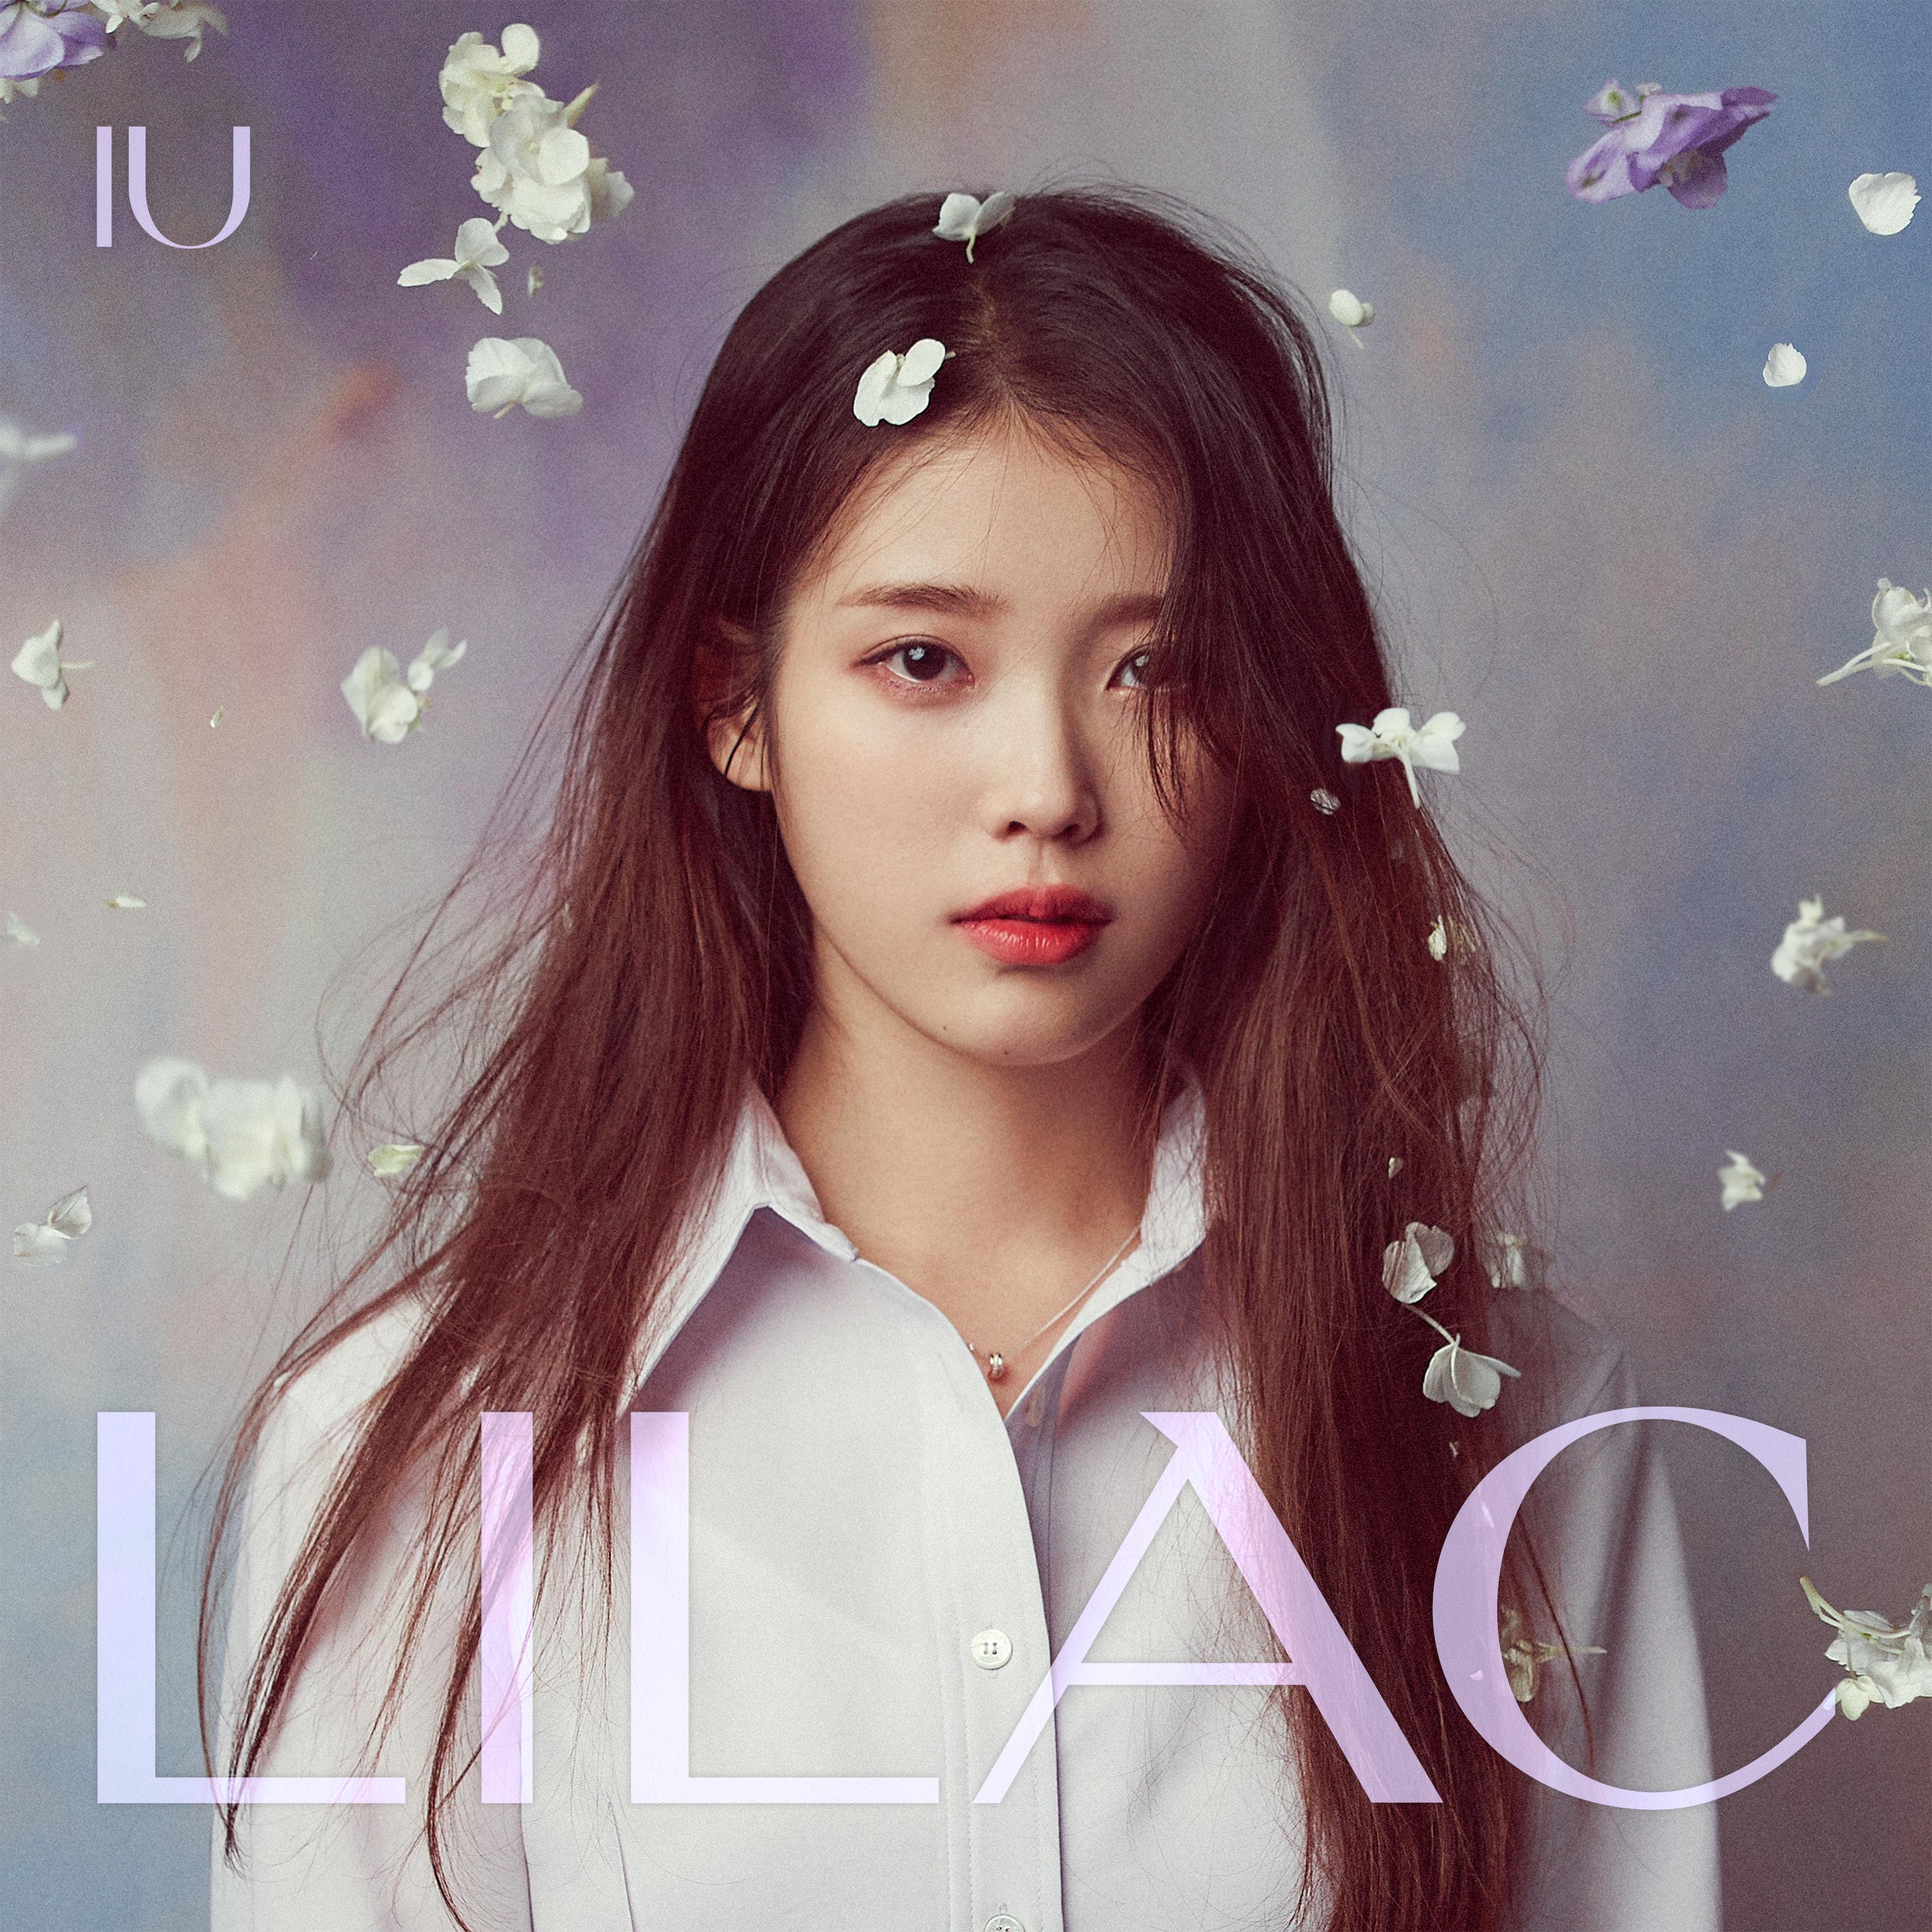 돌림노래歌词 歌手IU / DEAN-专辑IU 5th Album 'LILAC'-单曲《돌림노래》LRC歌词下载